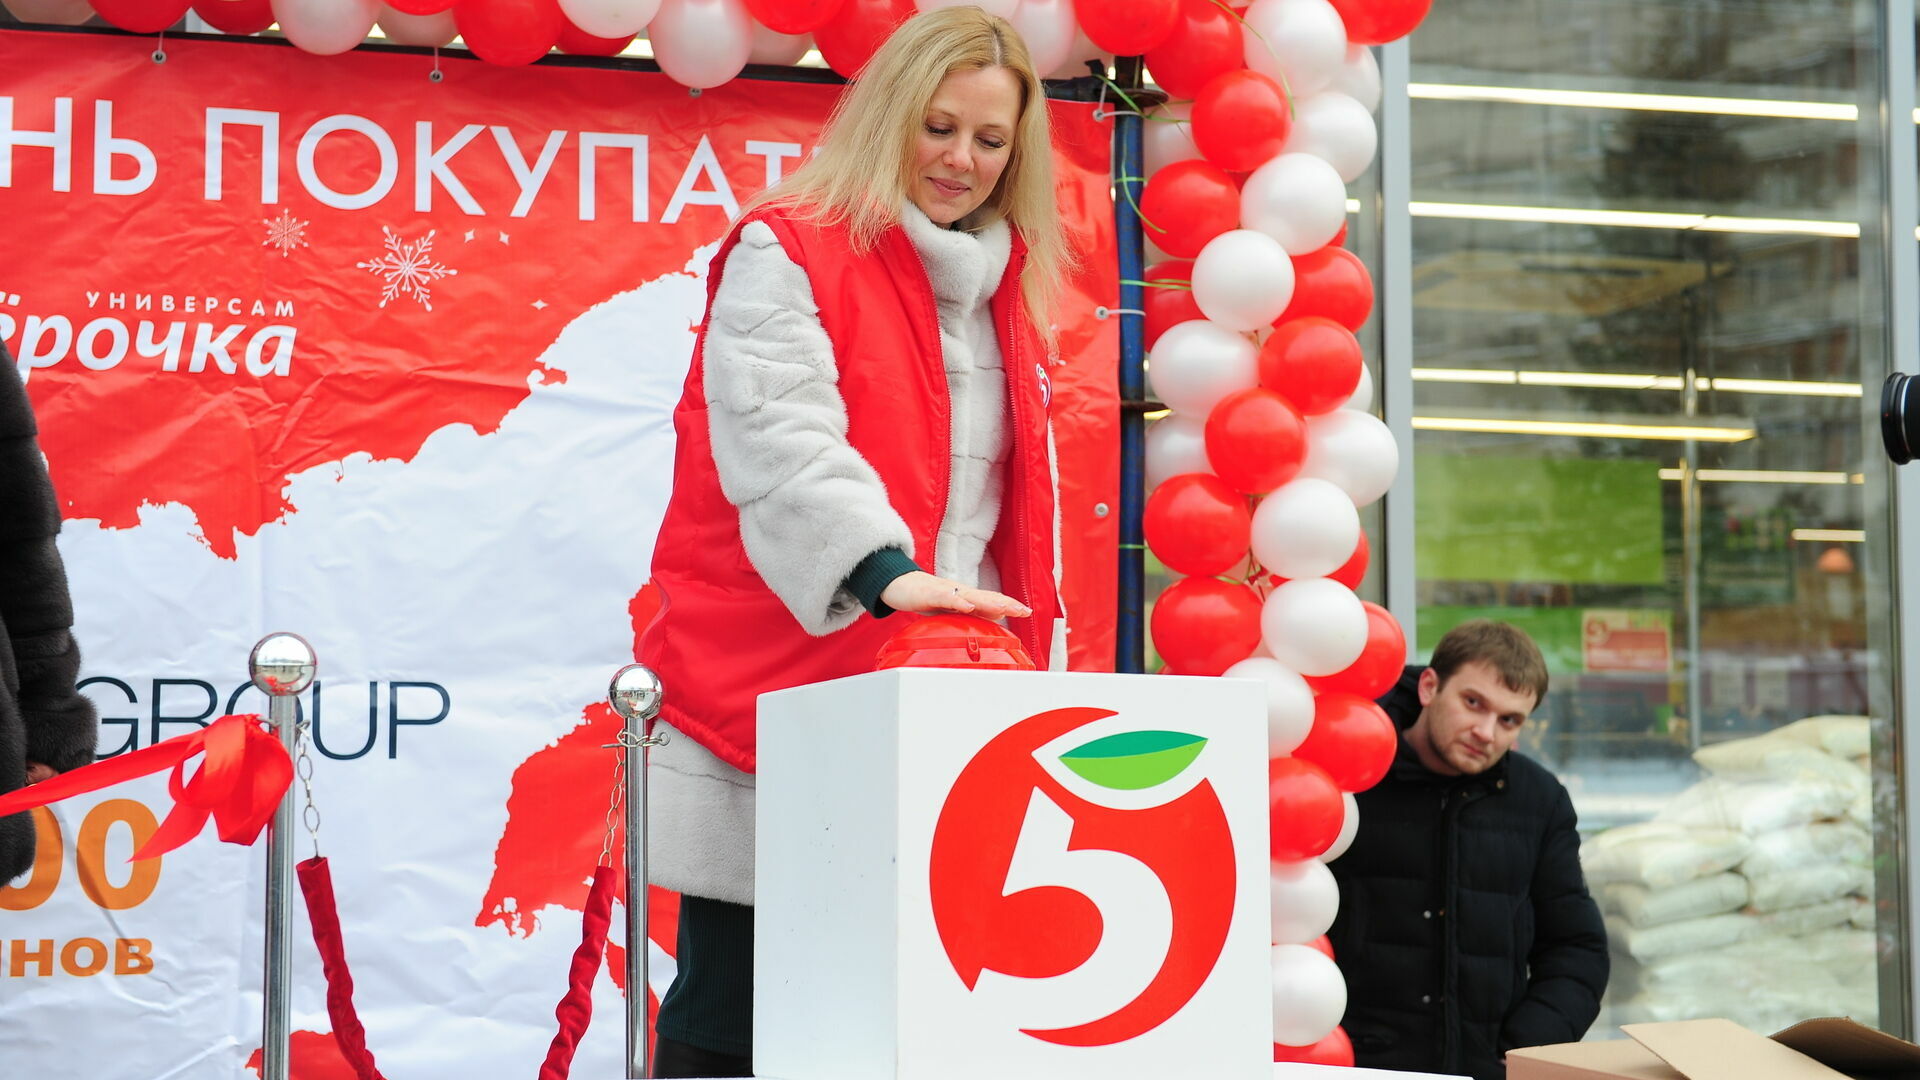 X5 Retail Group открыла в Перми новый магазин торговой сети «Пятерочка»